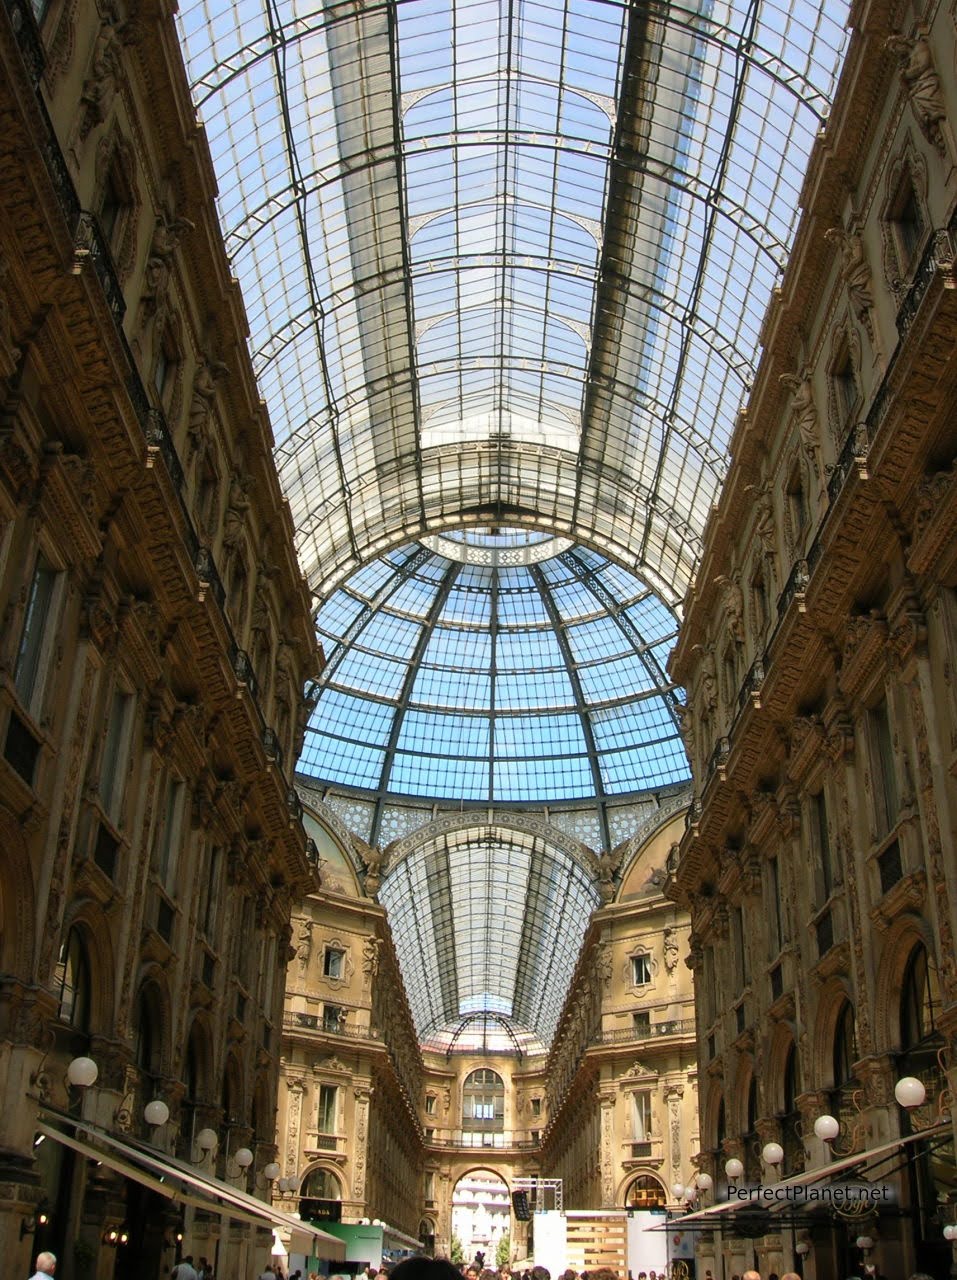 Galerías Vittorio Emanuele II